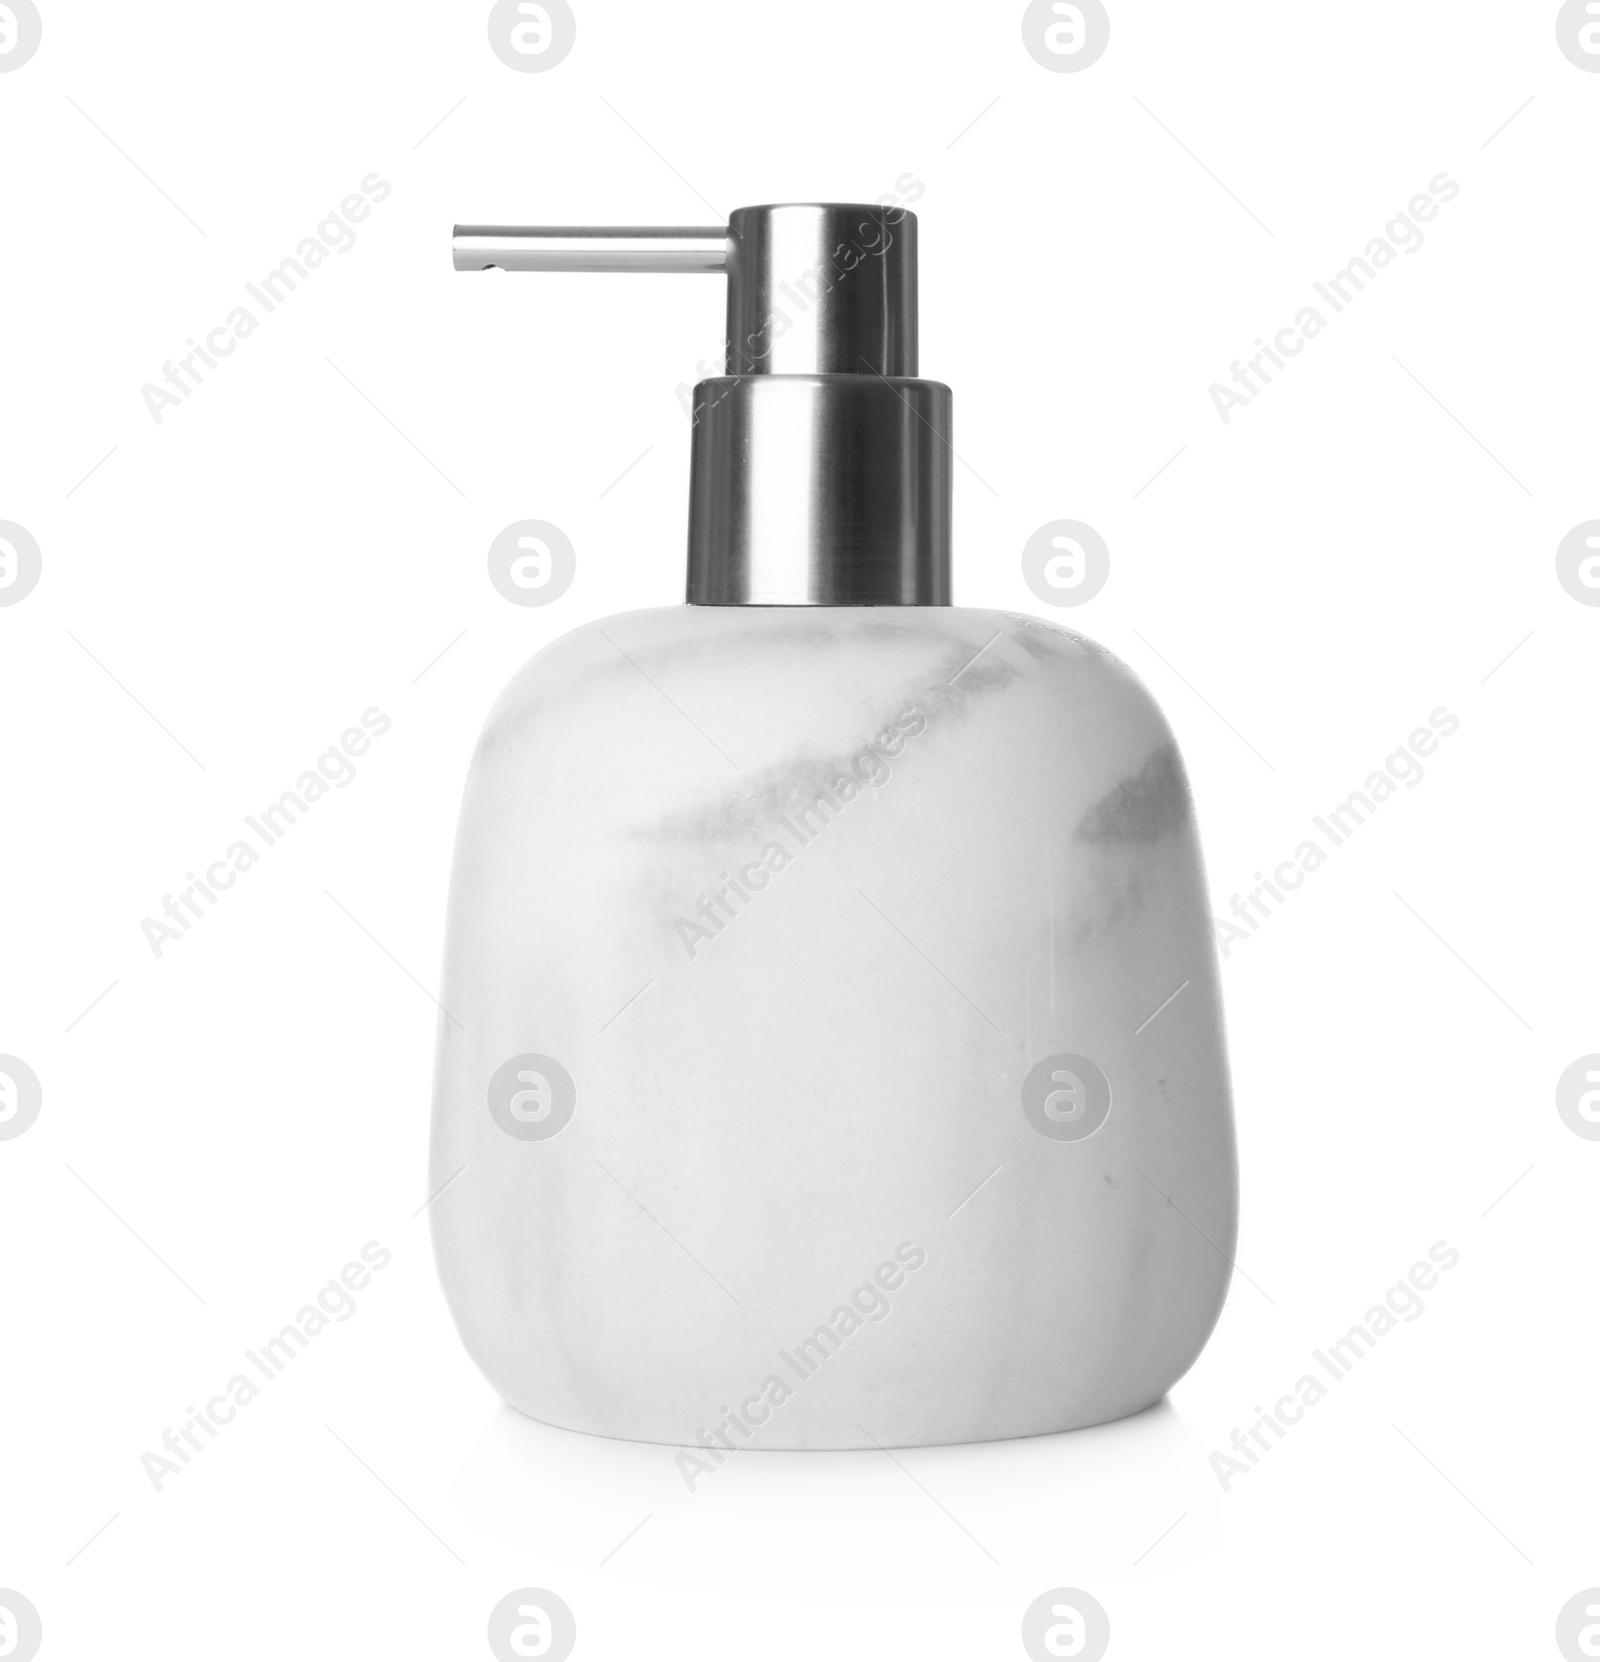 Photo of Stylish light soap dispenser isolated on white